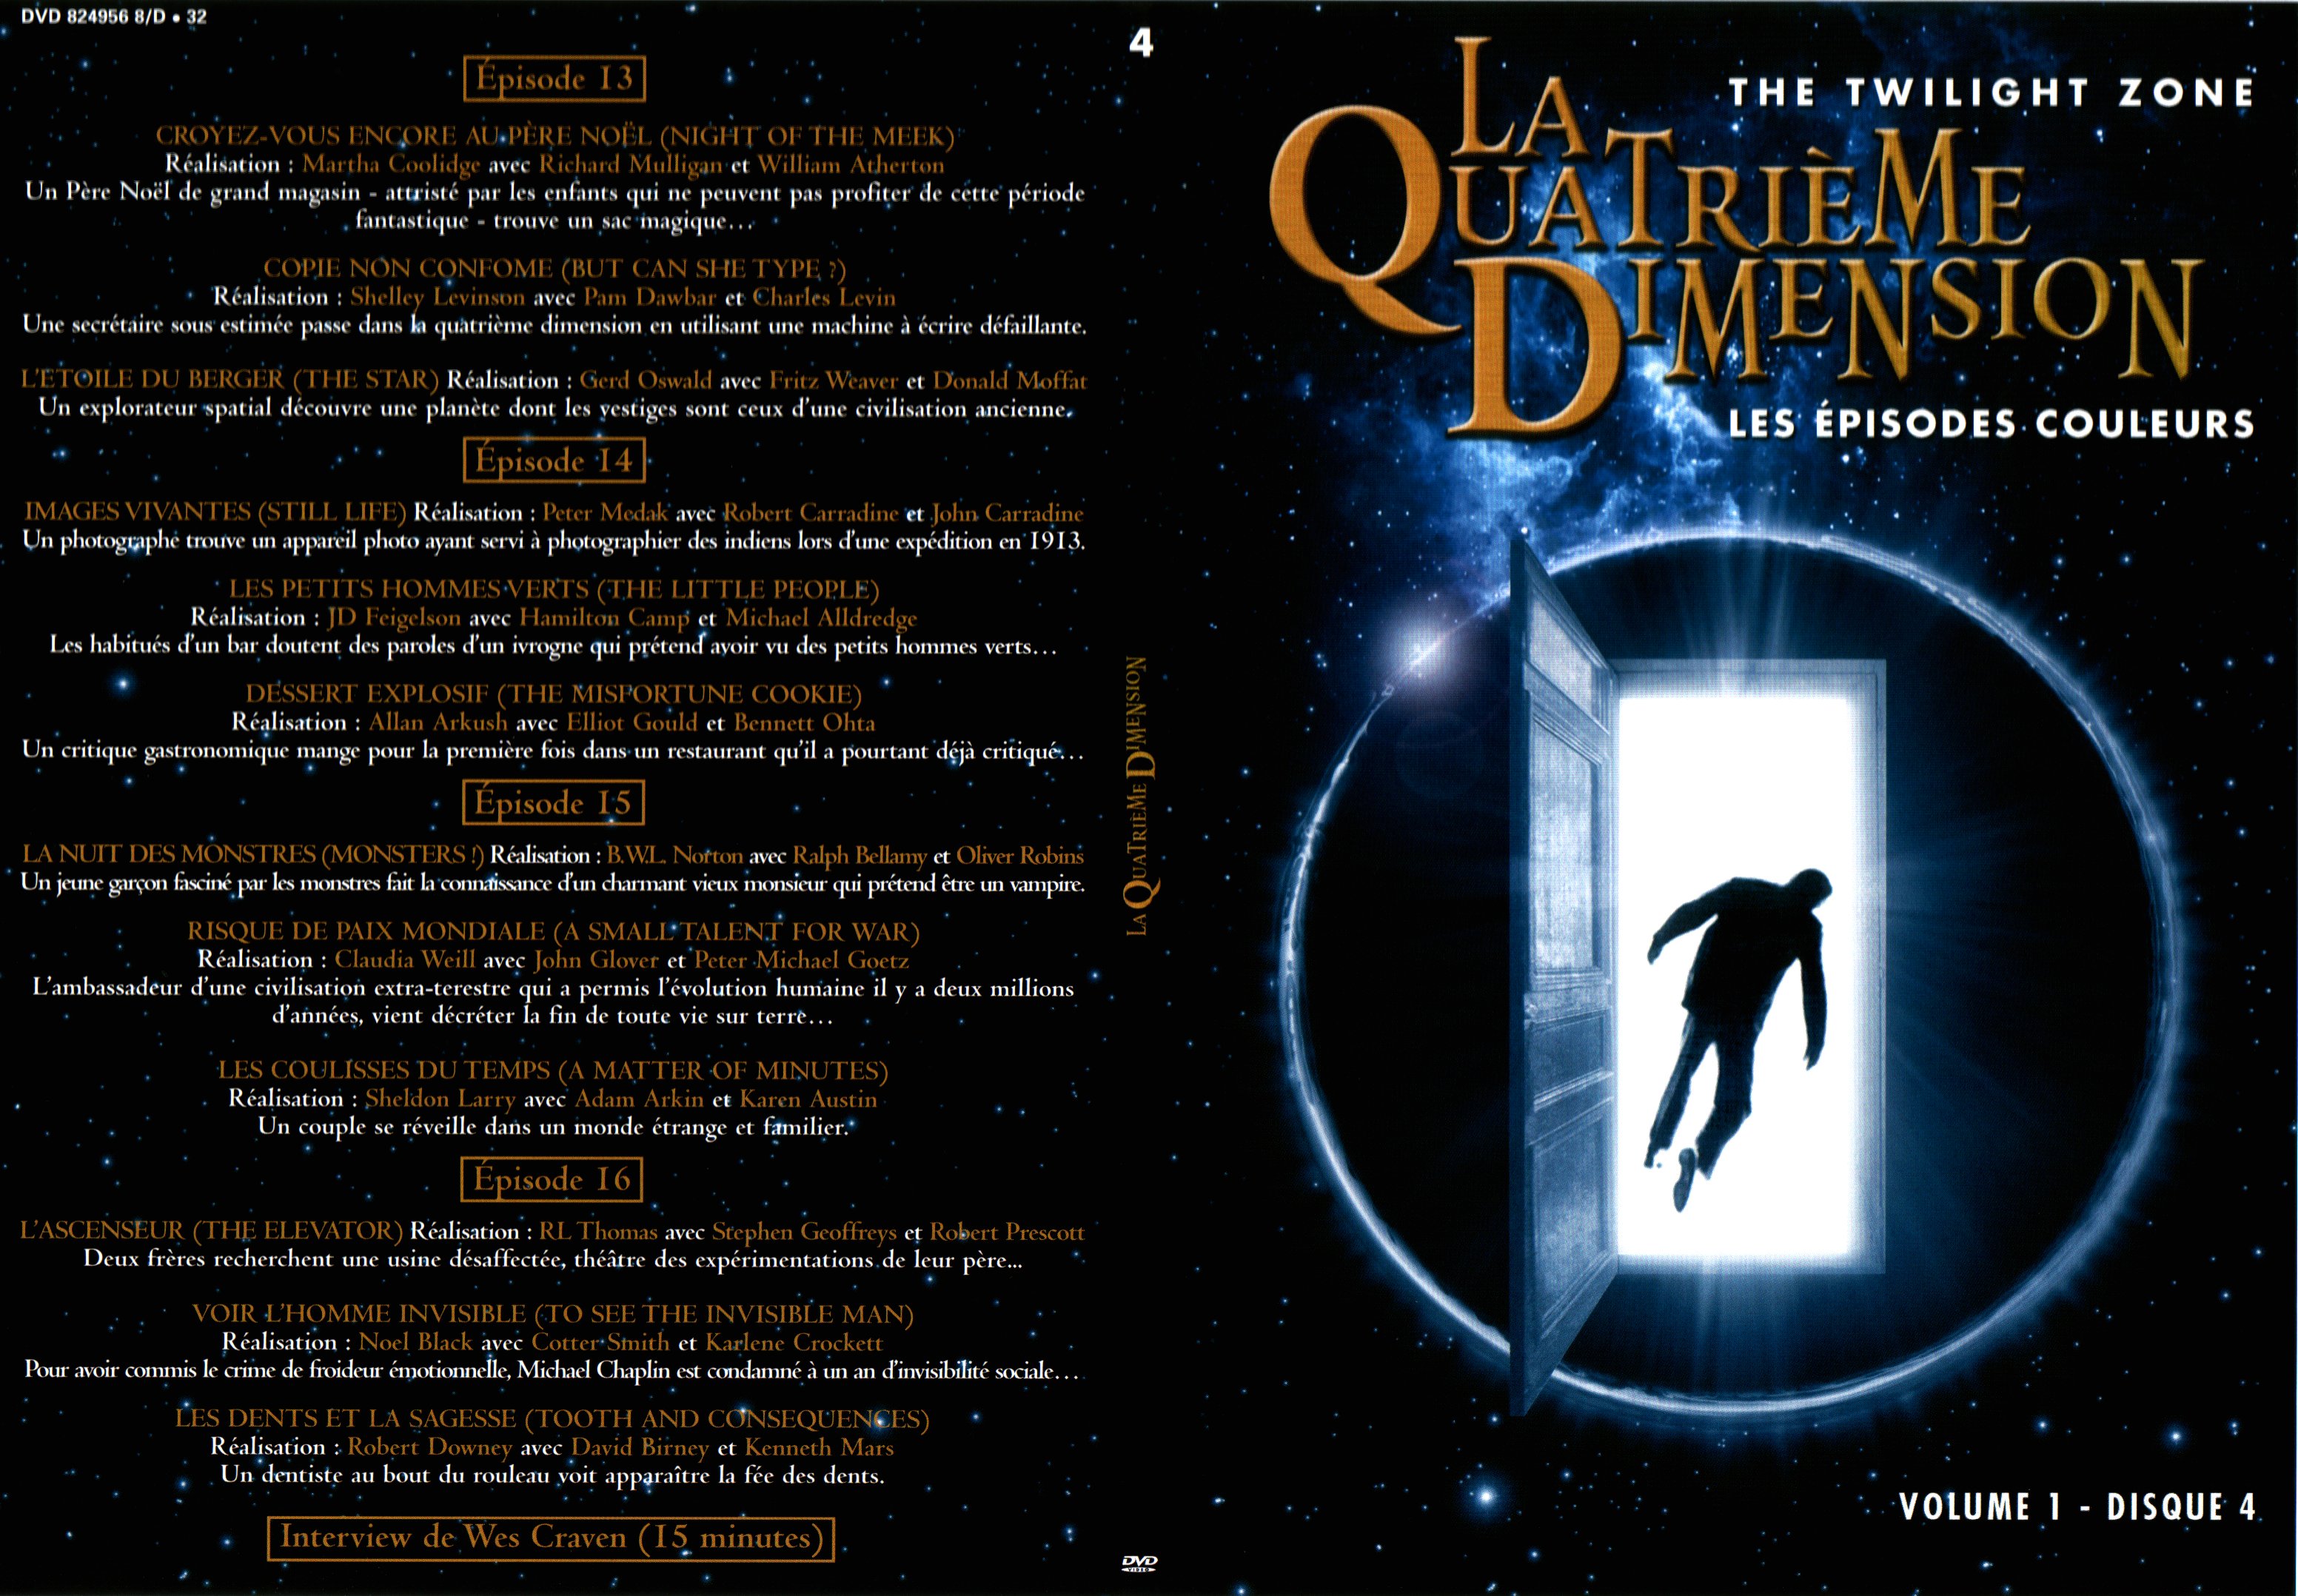 Jaquette DVD La quatrime dimension - Episodes couleurs vol 1 DVD 4